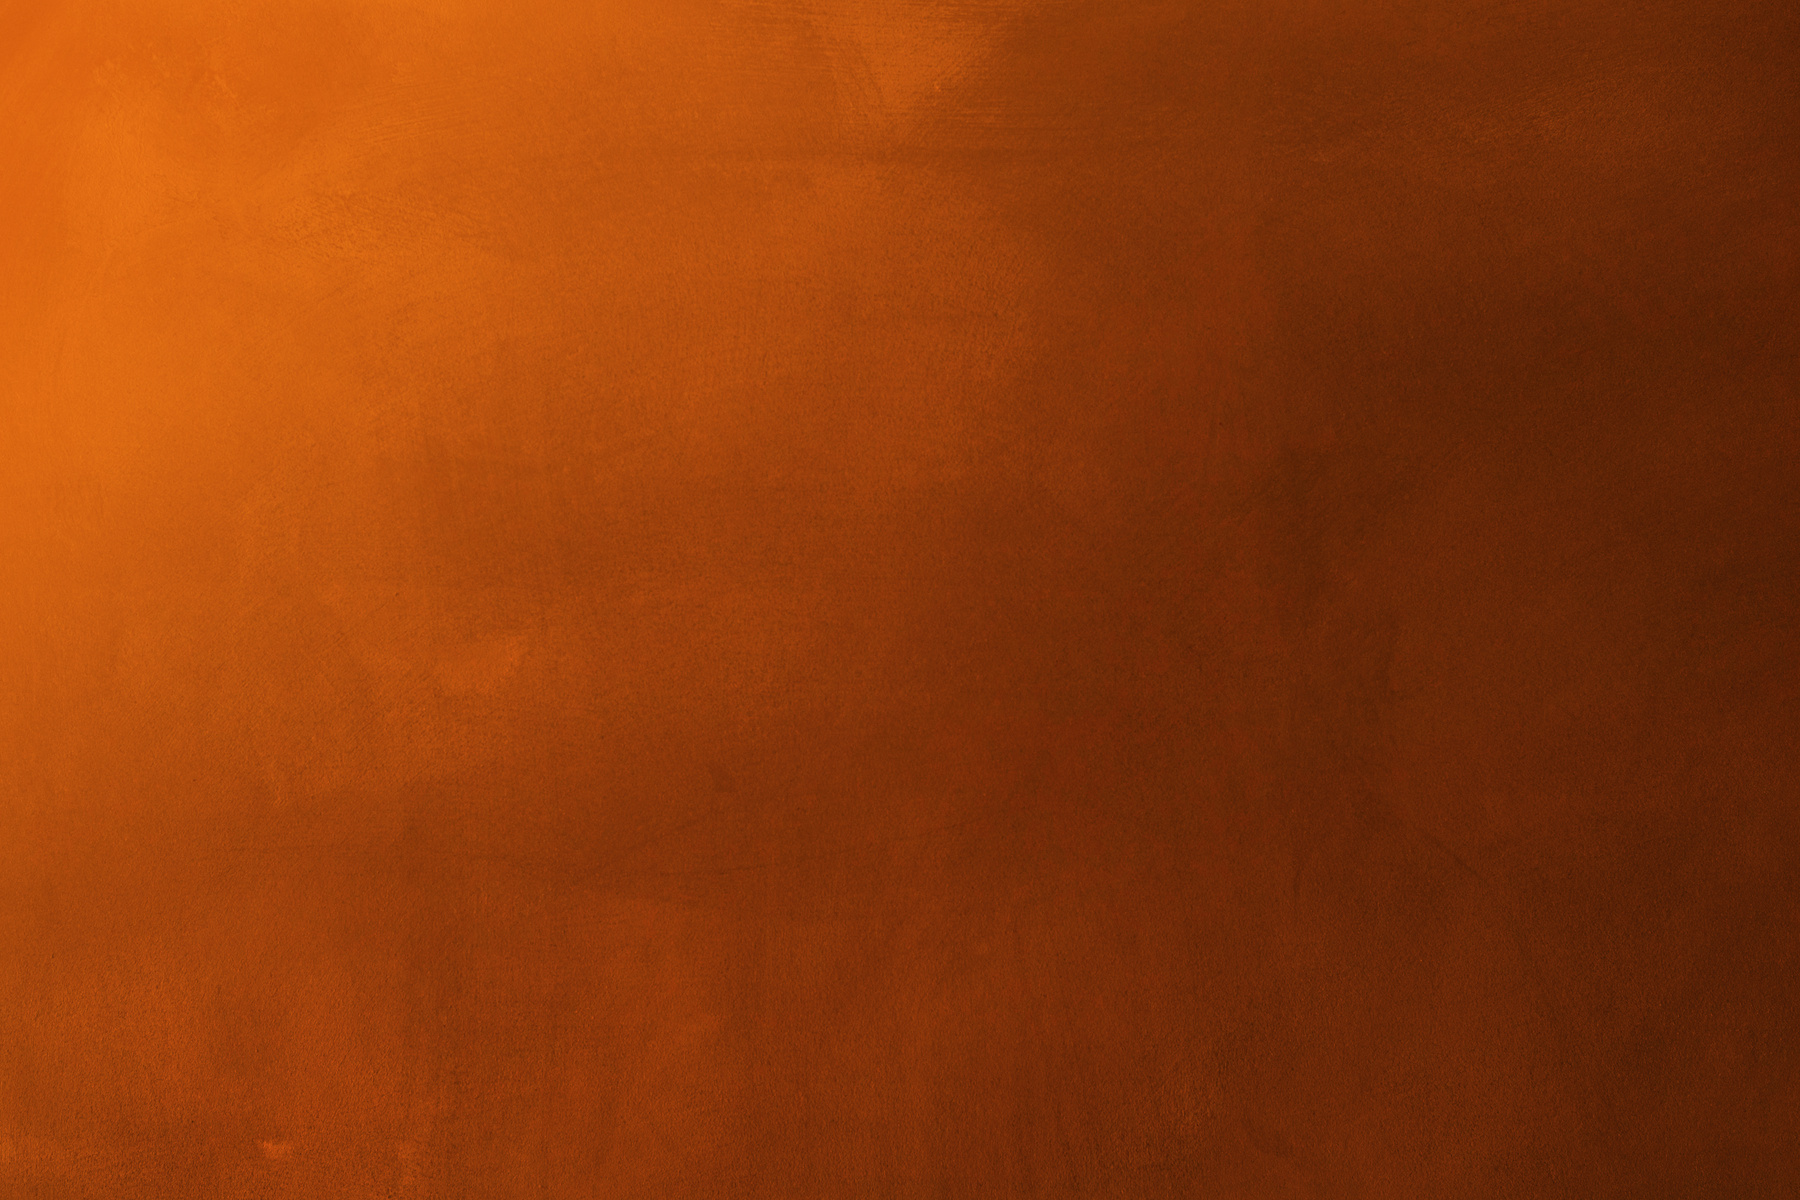 Orange and Dark Cement Texture Wall Background